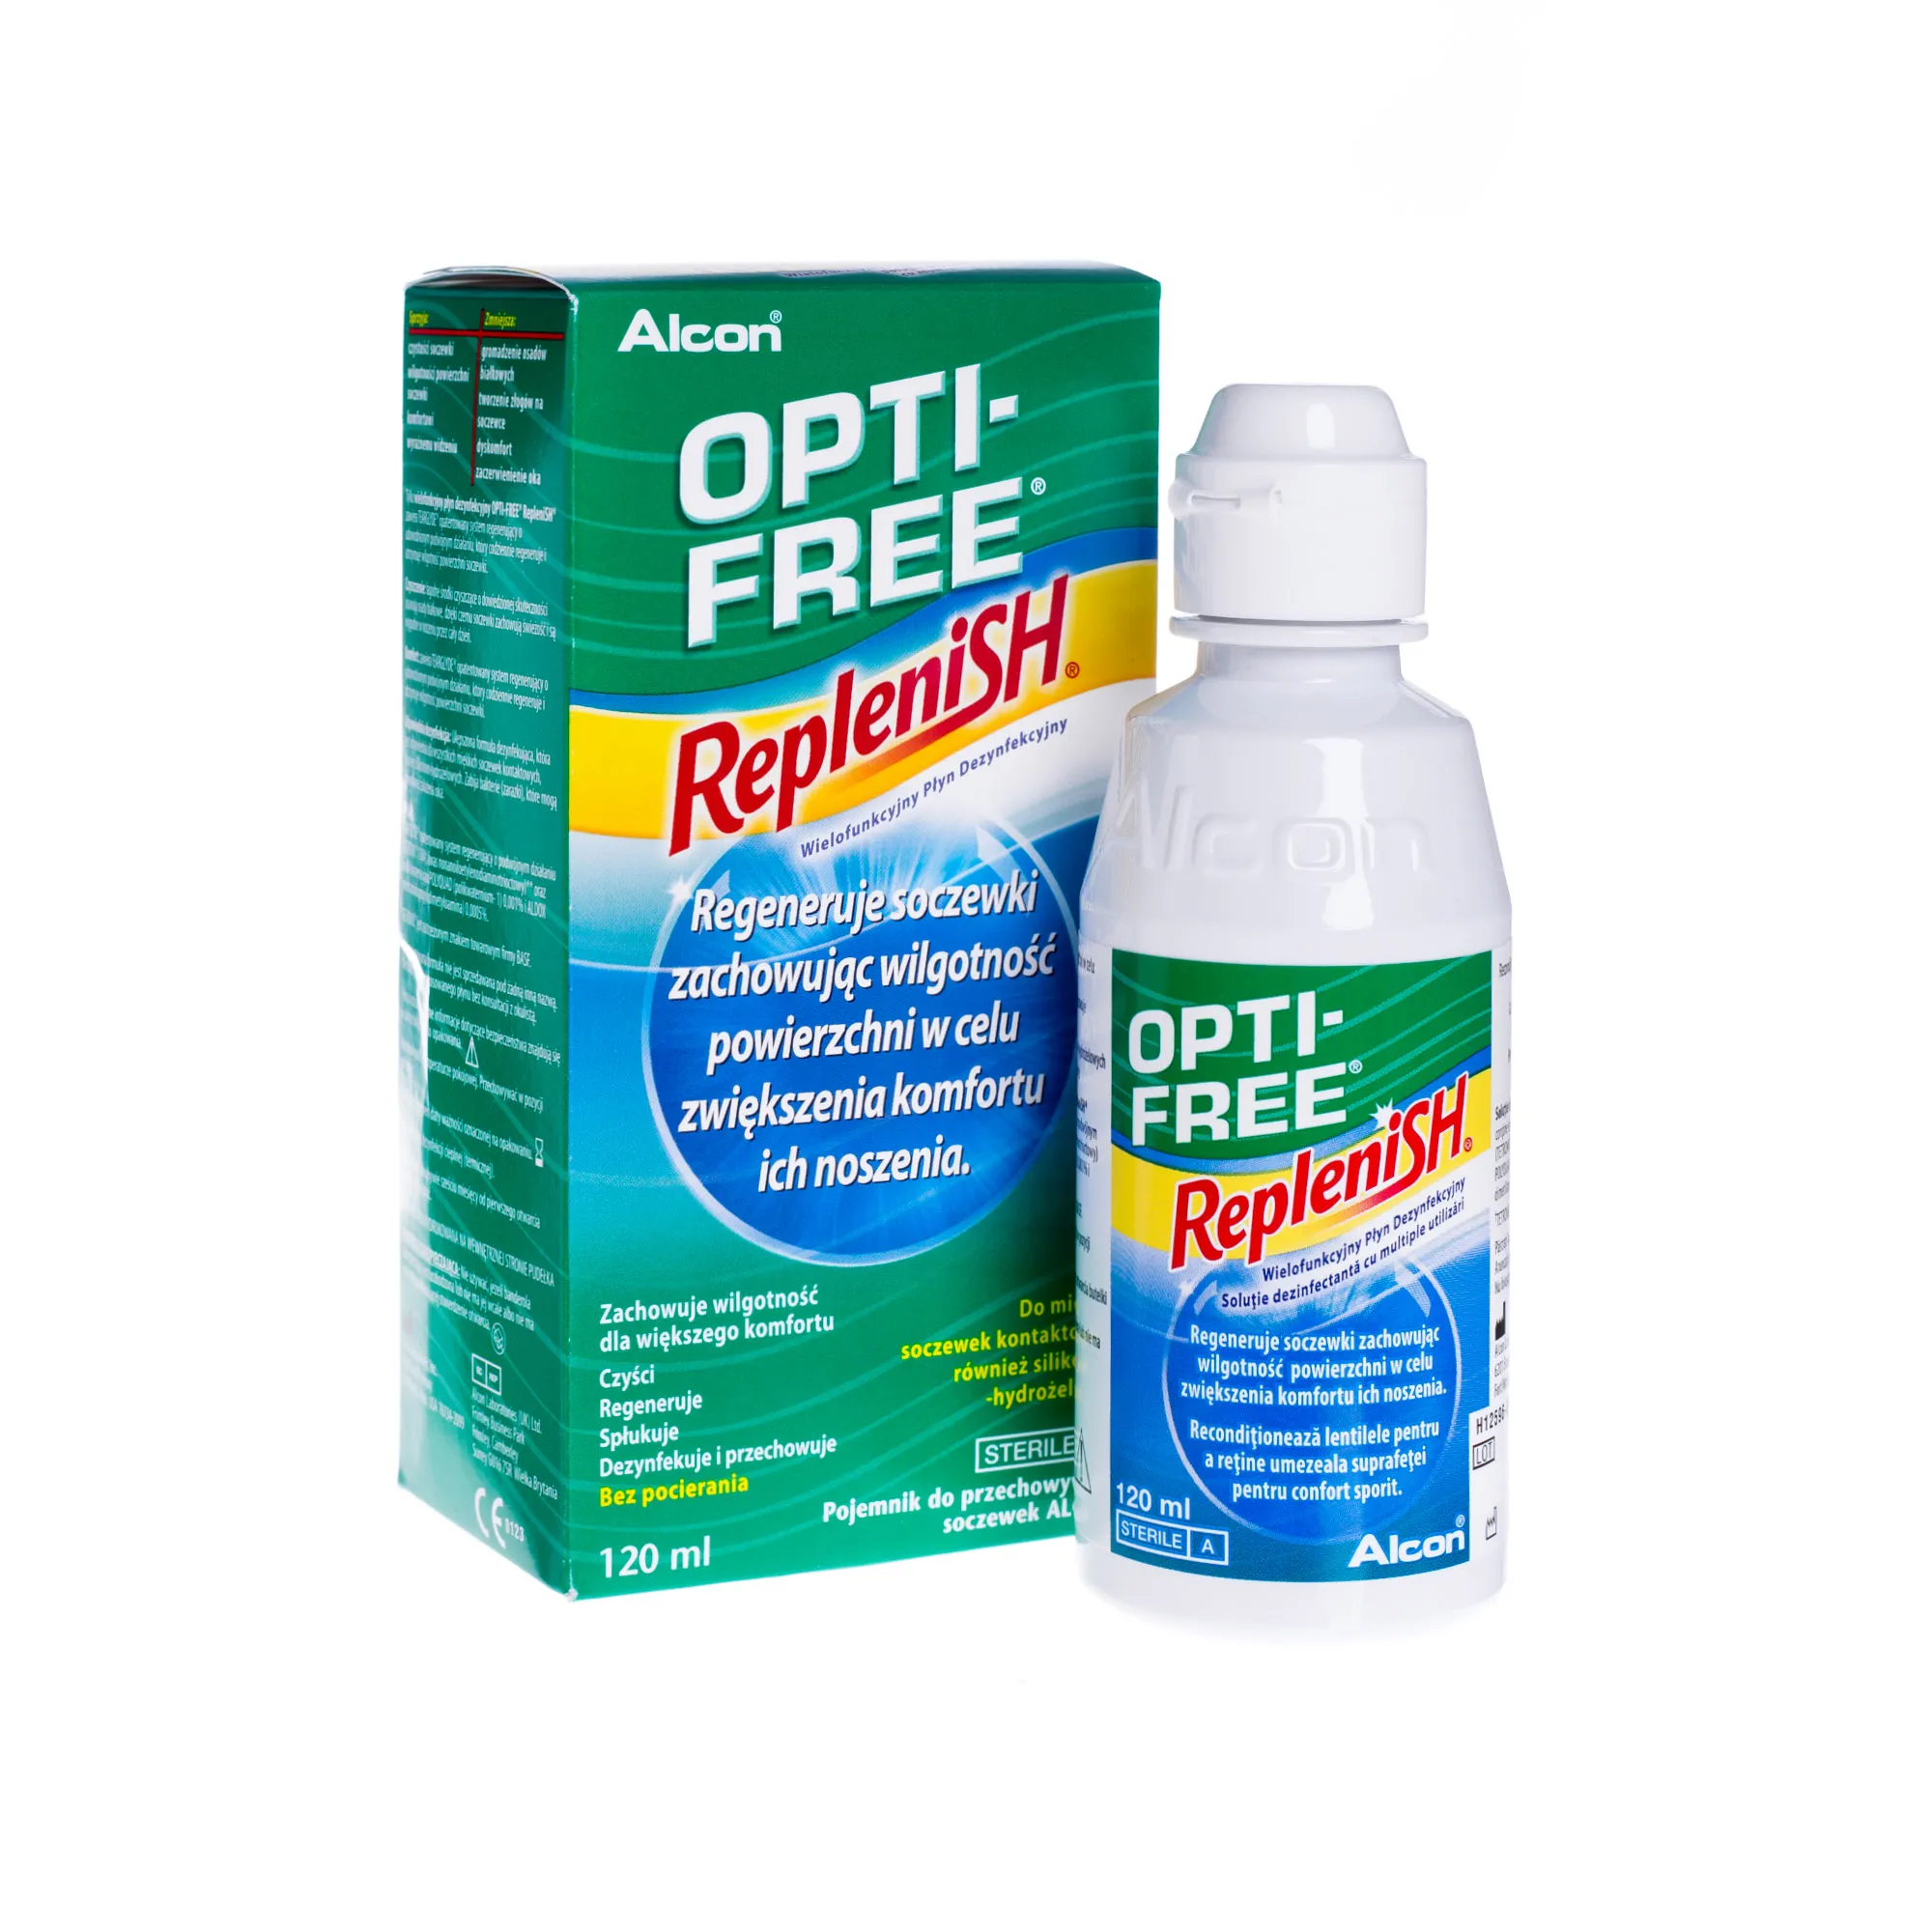 Opti-free Replenish, wielofunkcyjny płyn dezynfekcyjny, 120 ml 